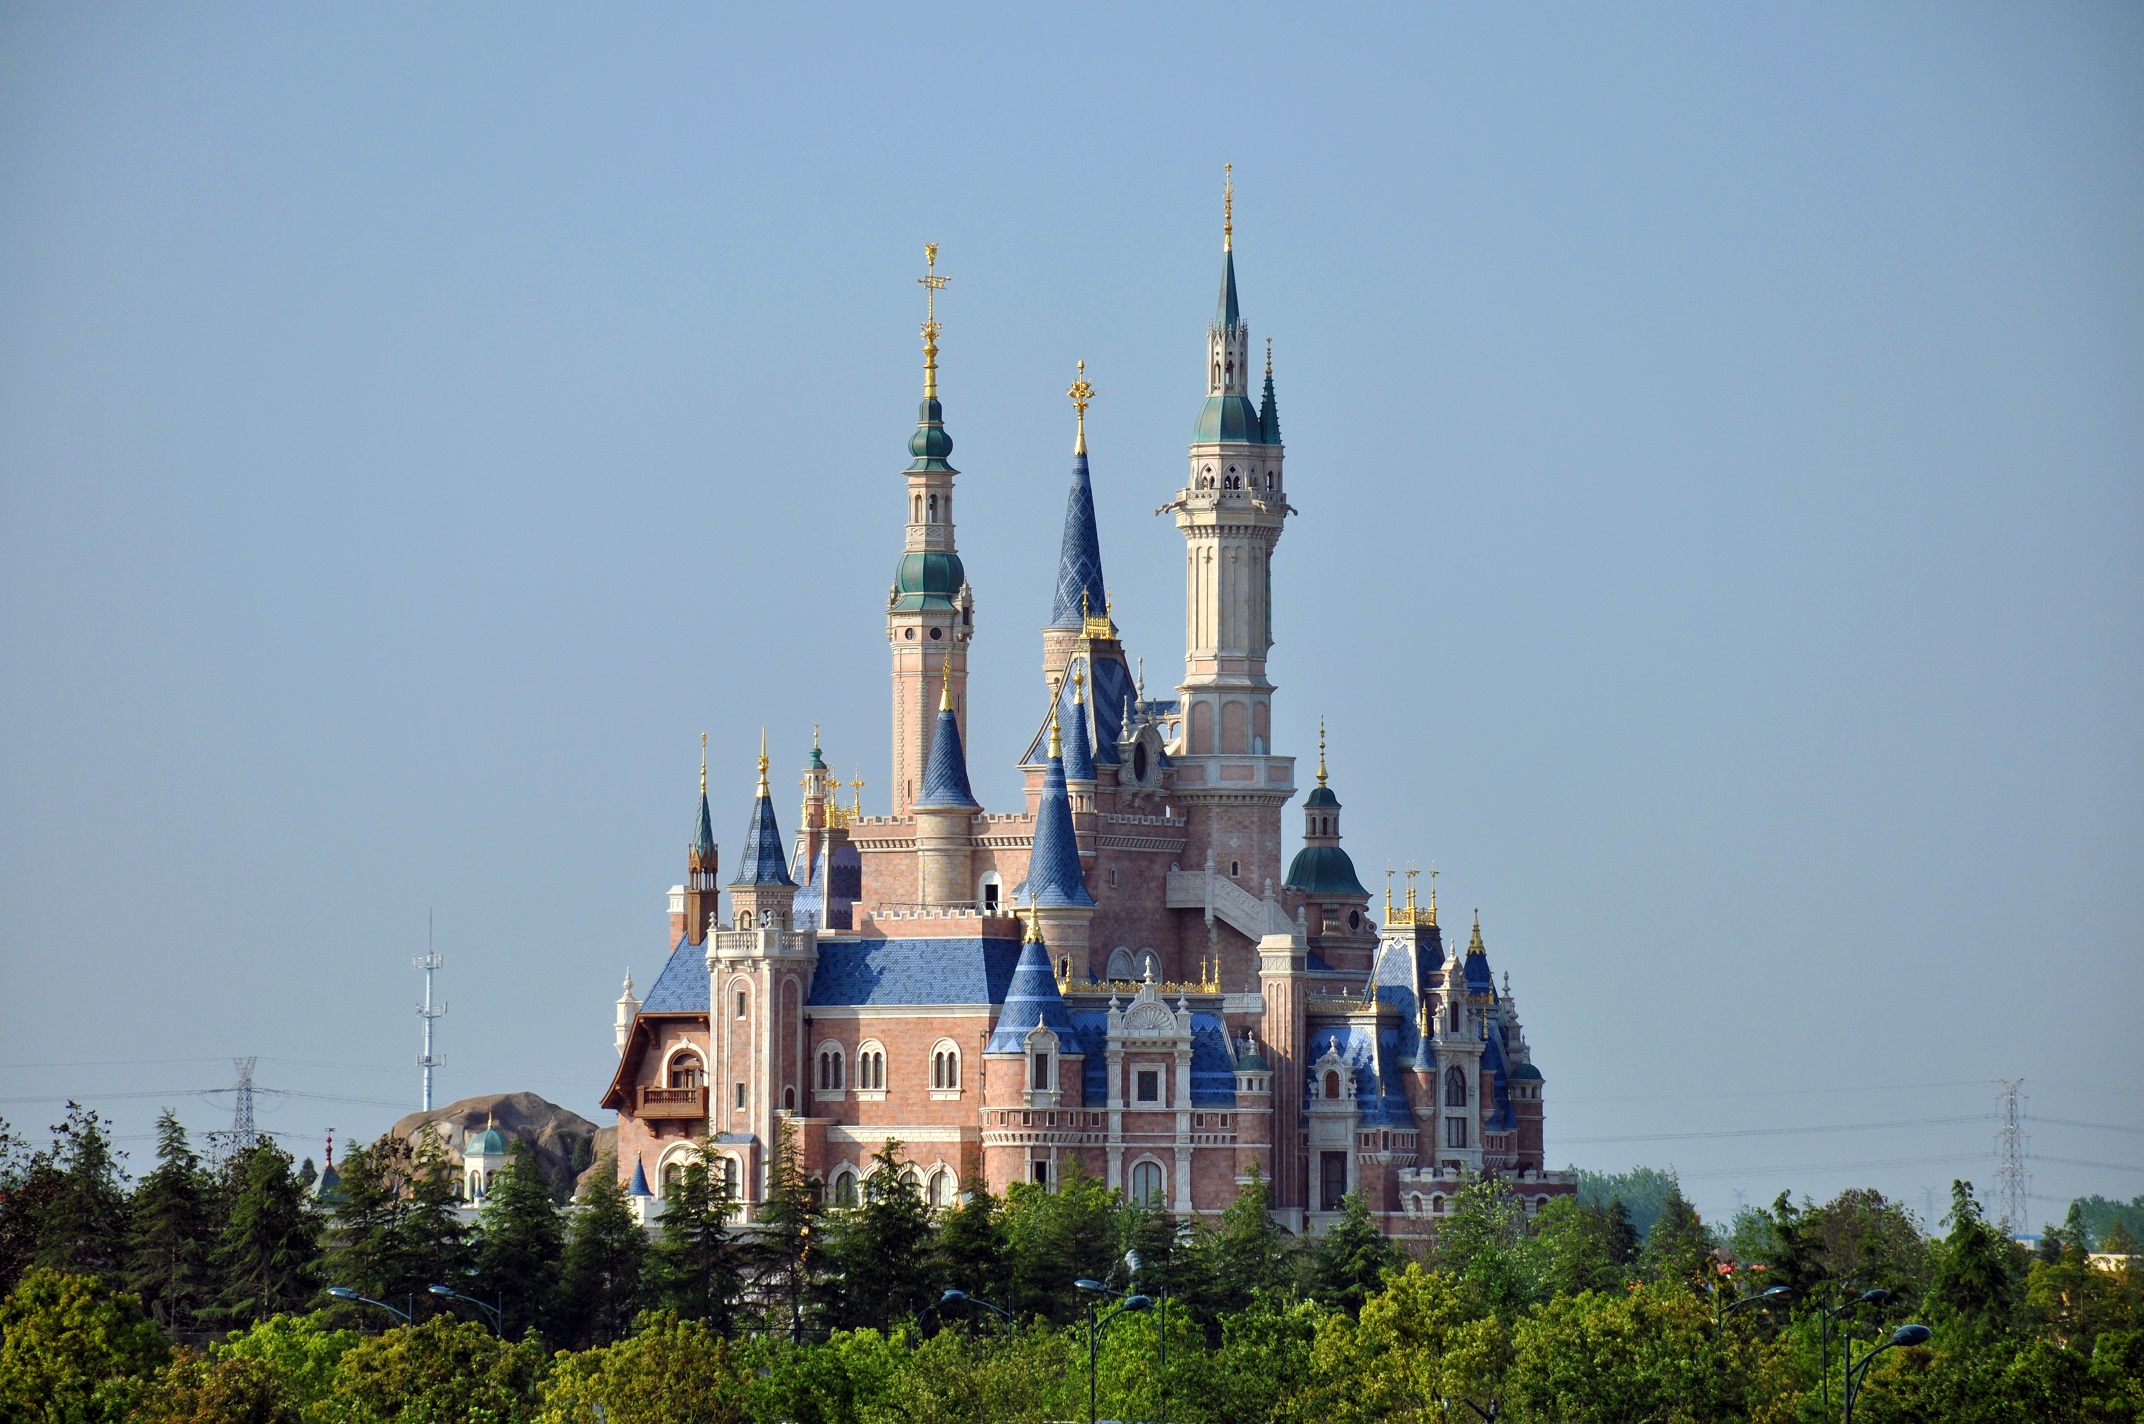 Enchanted_Storybook_Castle_of_Shanghai_Disneyland